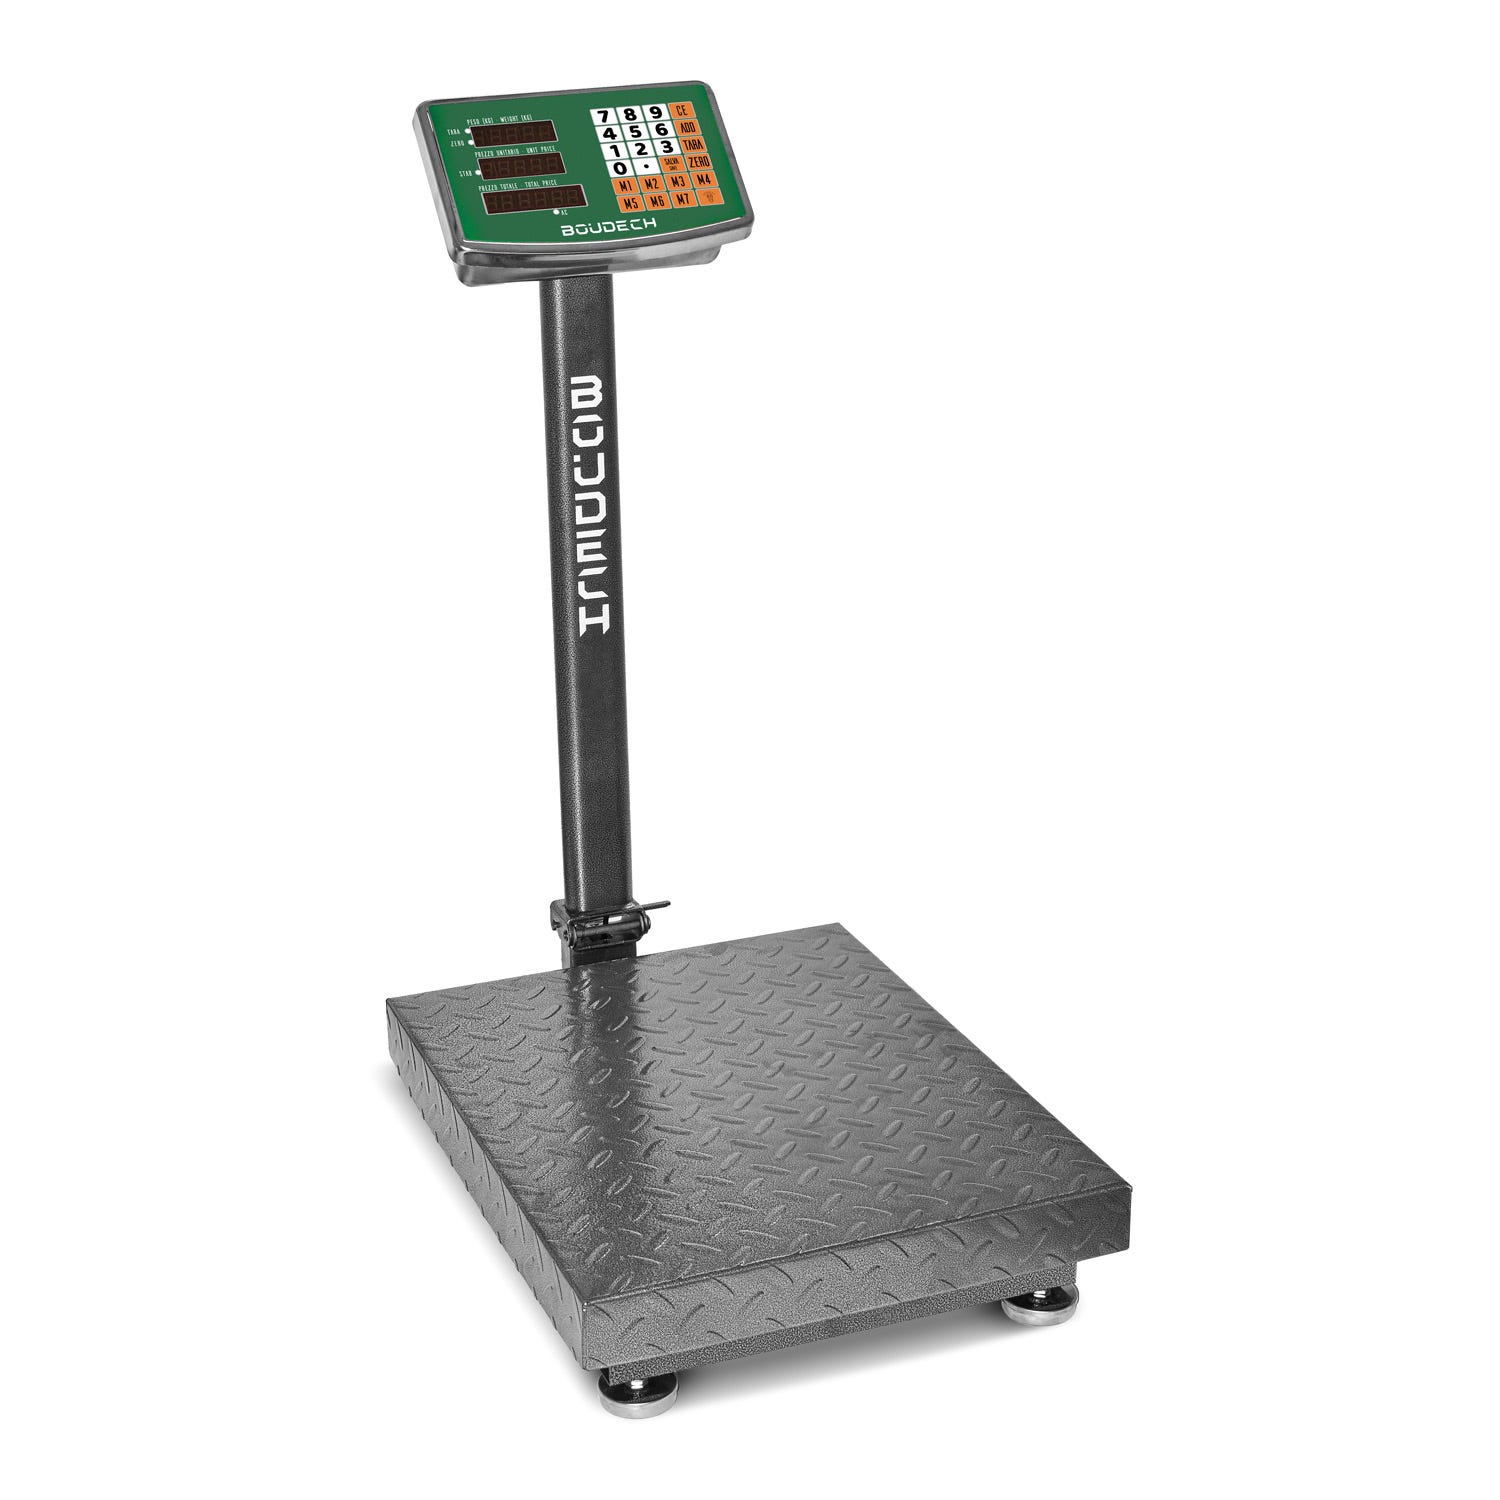 Bascula Digital, balanza para medir peso 